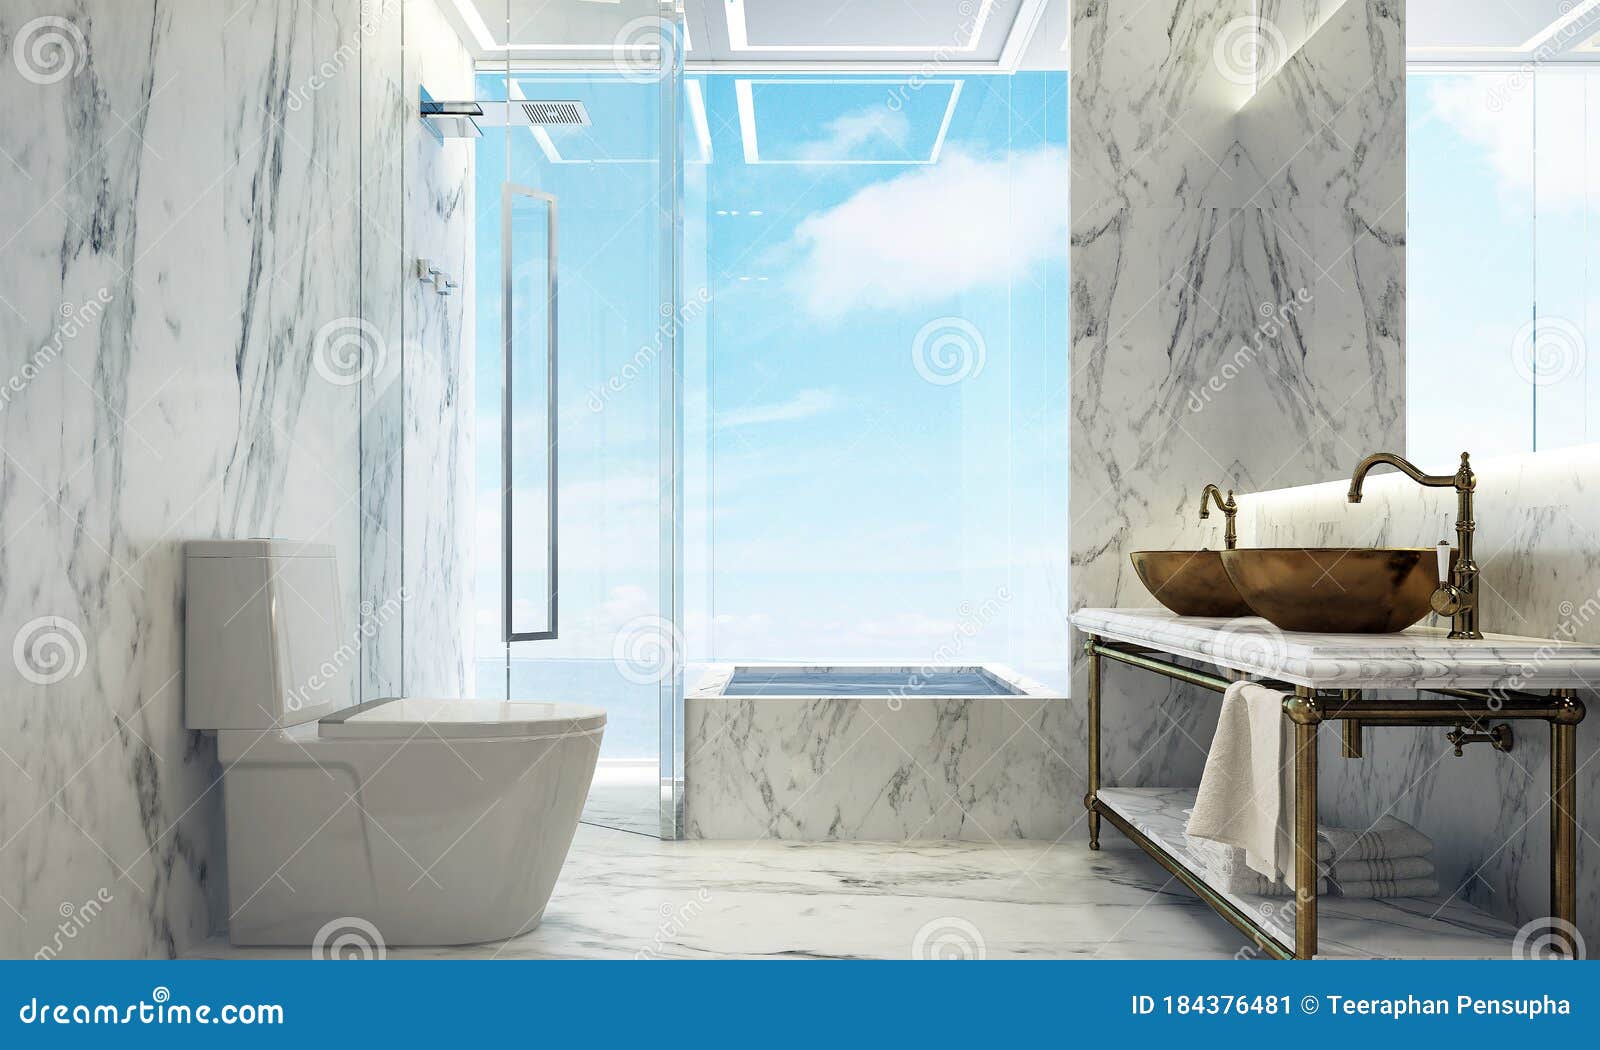 Không gian sống hiện đại và đồng bộ là xu hướng của thời đại, và phòng tắm của bạn cũng không thể thiếu điều này. Hãy chọn thiết kế nội thất phòng tắm tinh tế và tiện nghi, để bạn có thể tận hưởng những giây phút nghỉ ngơi đầy thoải mái và thư giãn sau một ngày làm việc.